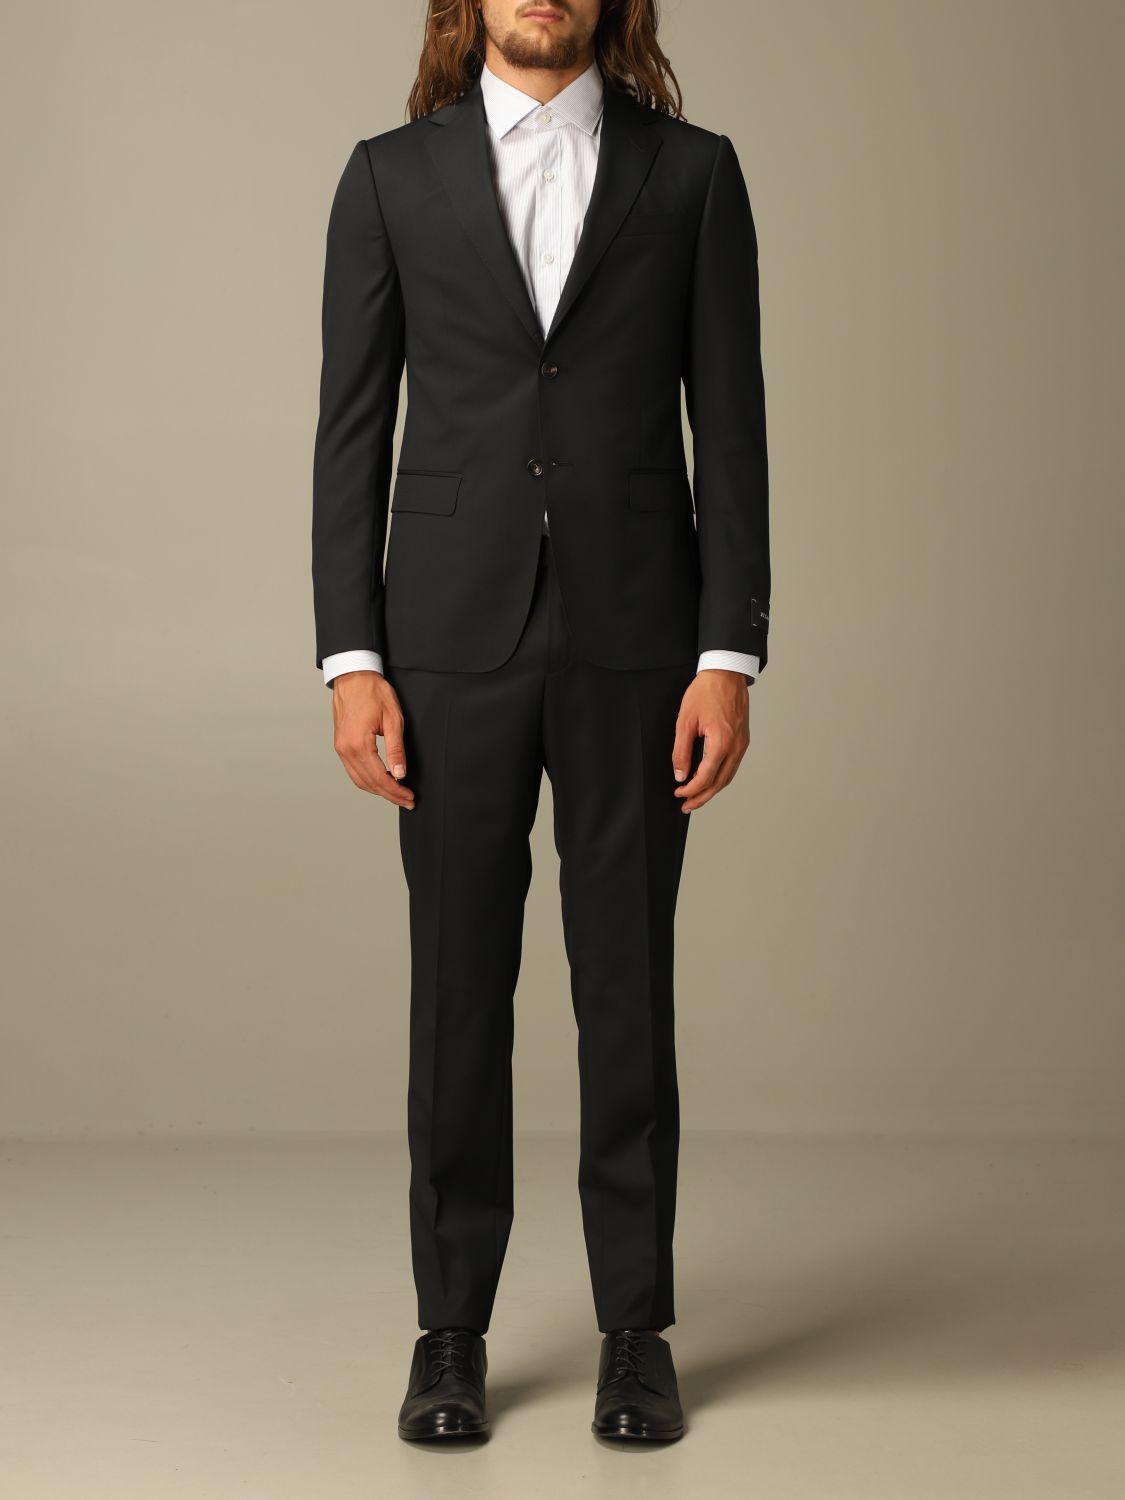 Z Zegna Suit in Black for Men - Lyst